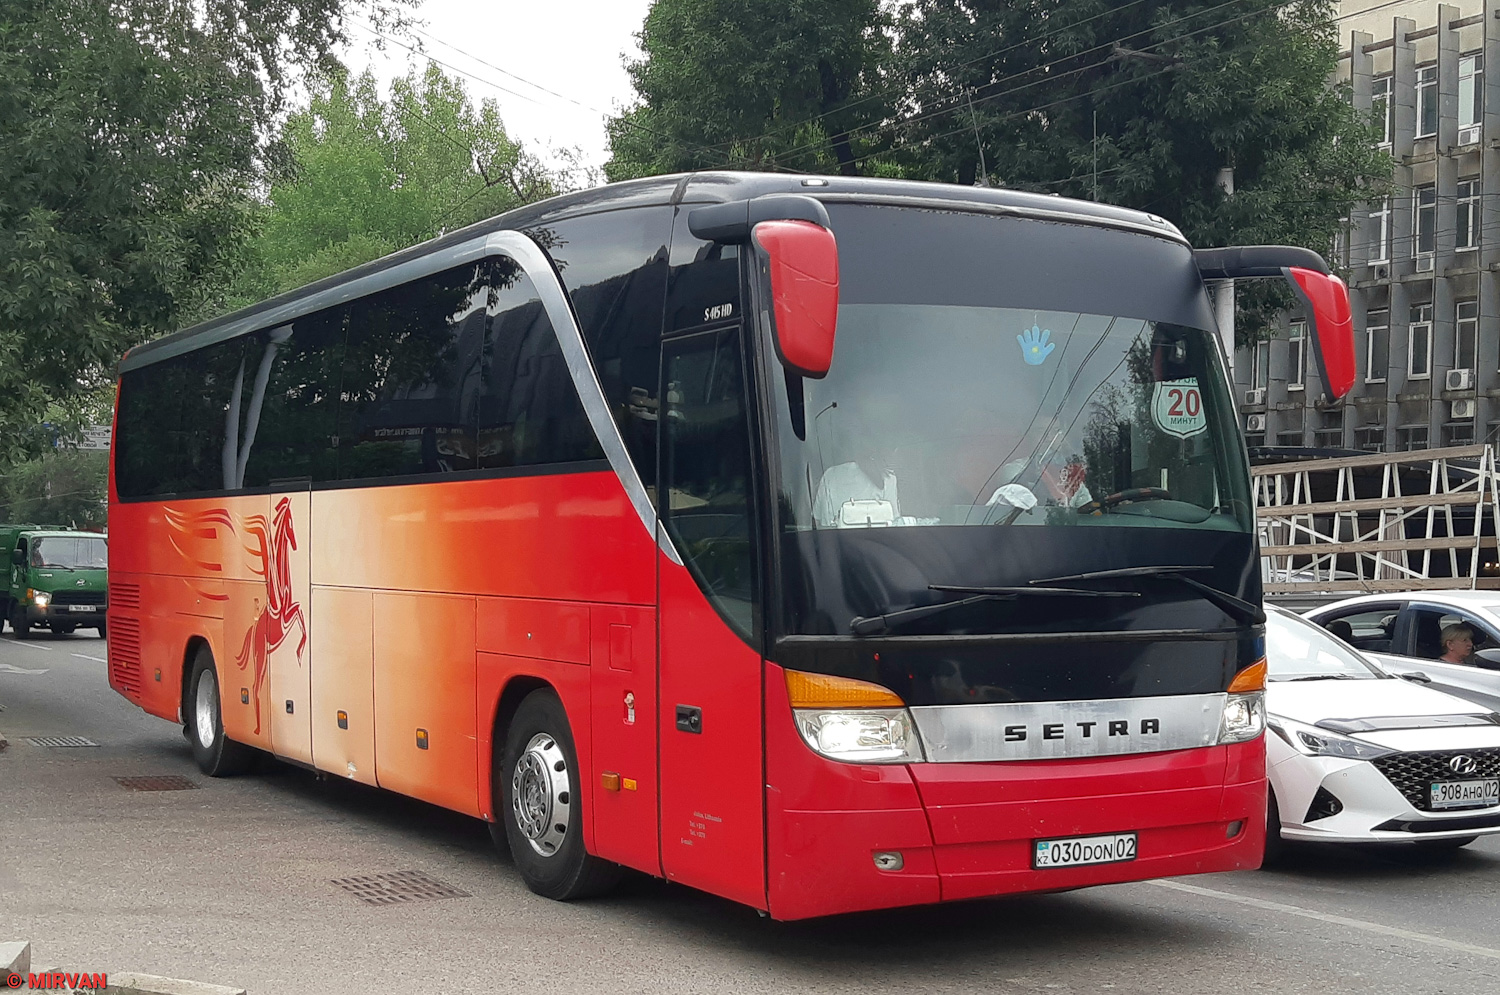 Almaty, Setra S415HD č. 030 DON 02